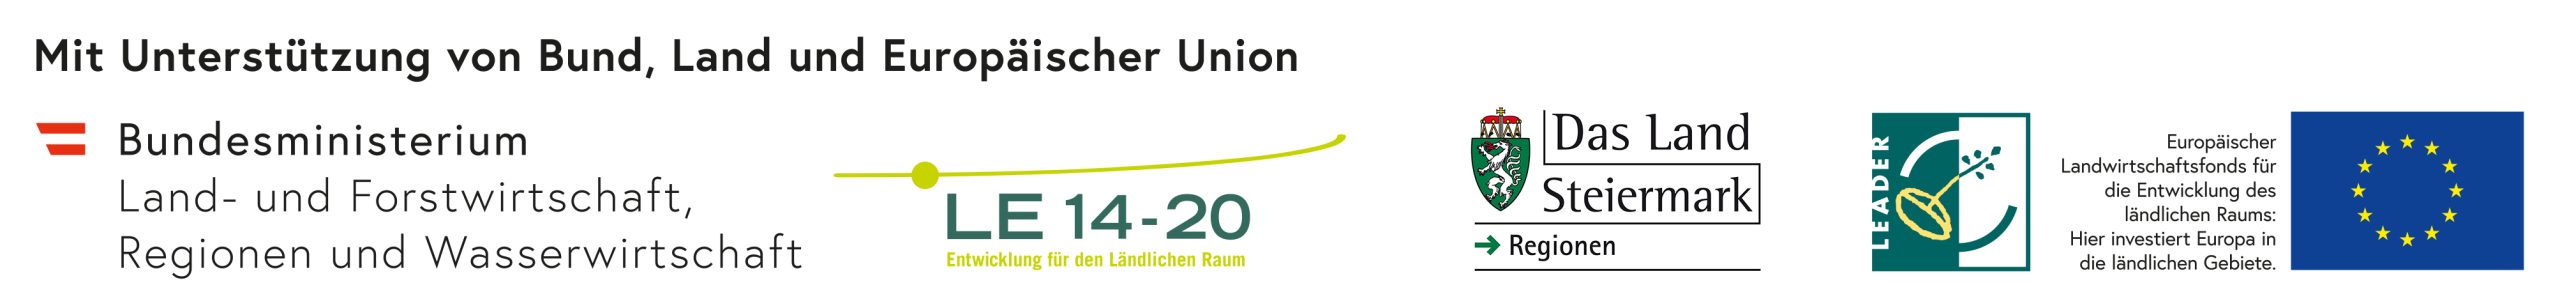 Logos von Bundesministerium, LE 14-20 Das Land Steiermark, Leader und EU. Unterstützt von Bund, Land und Europäischer Union.